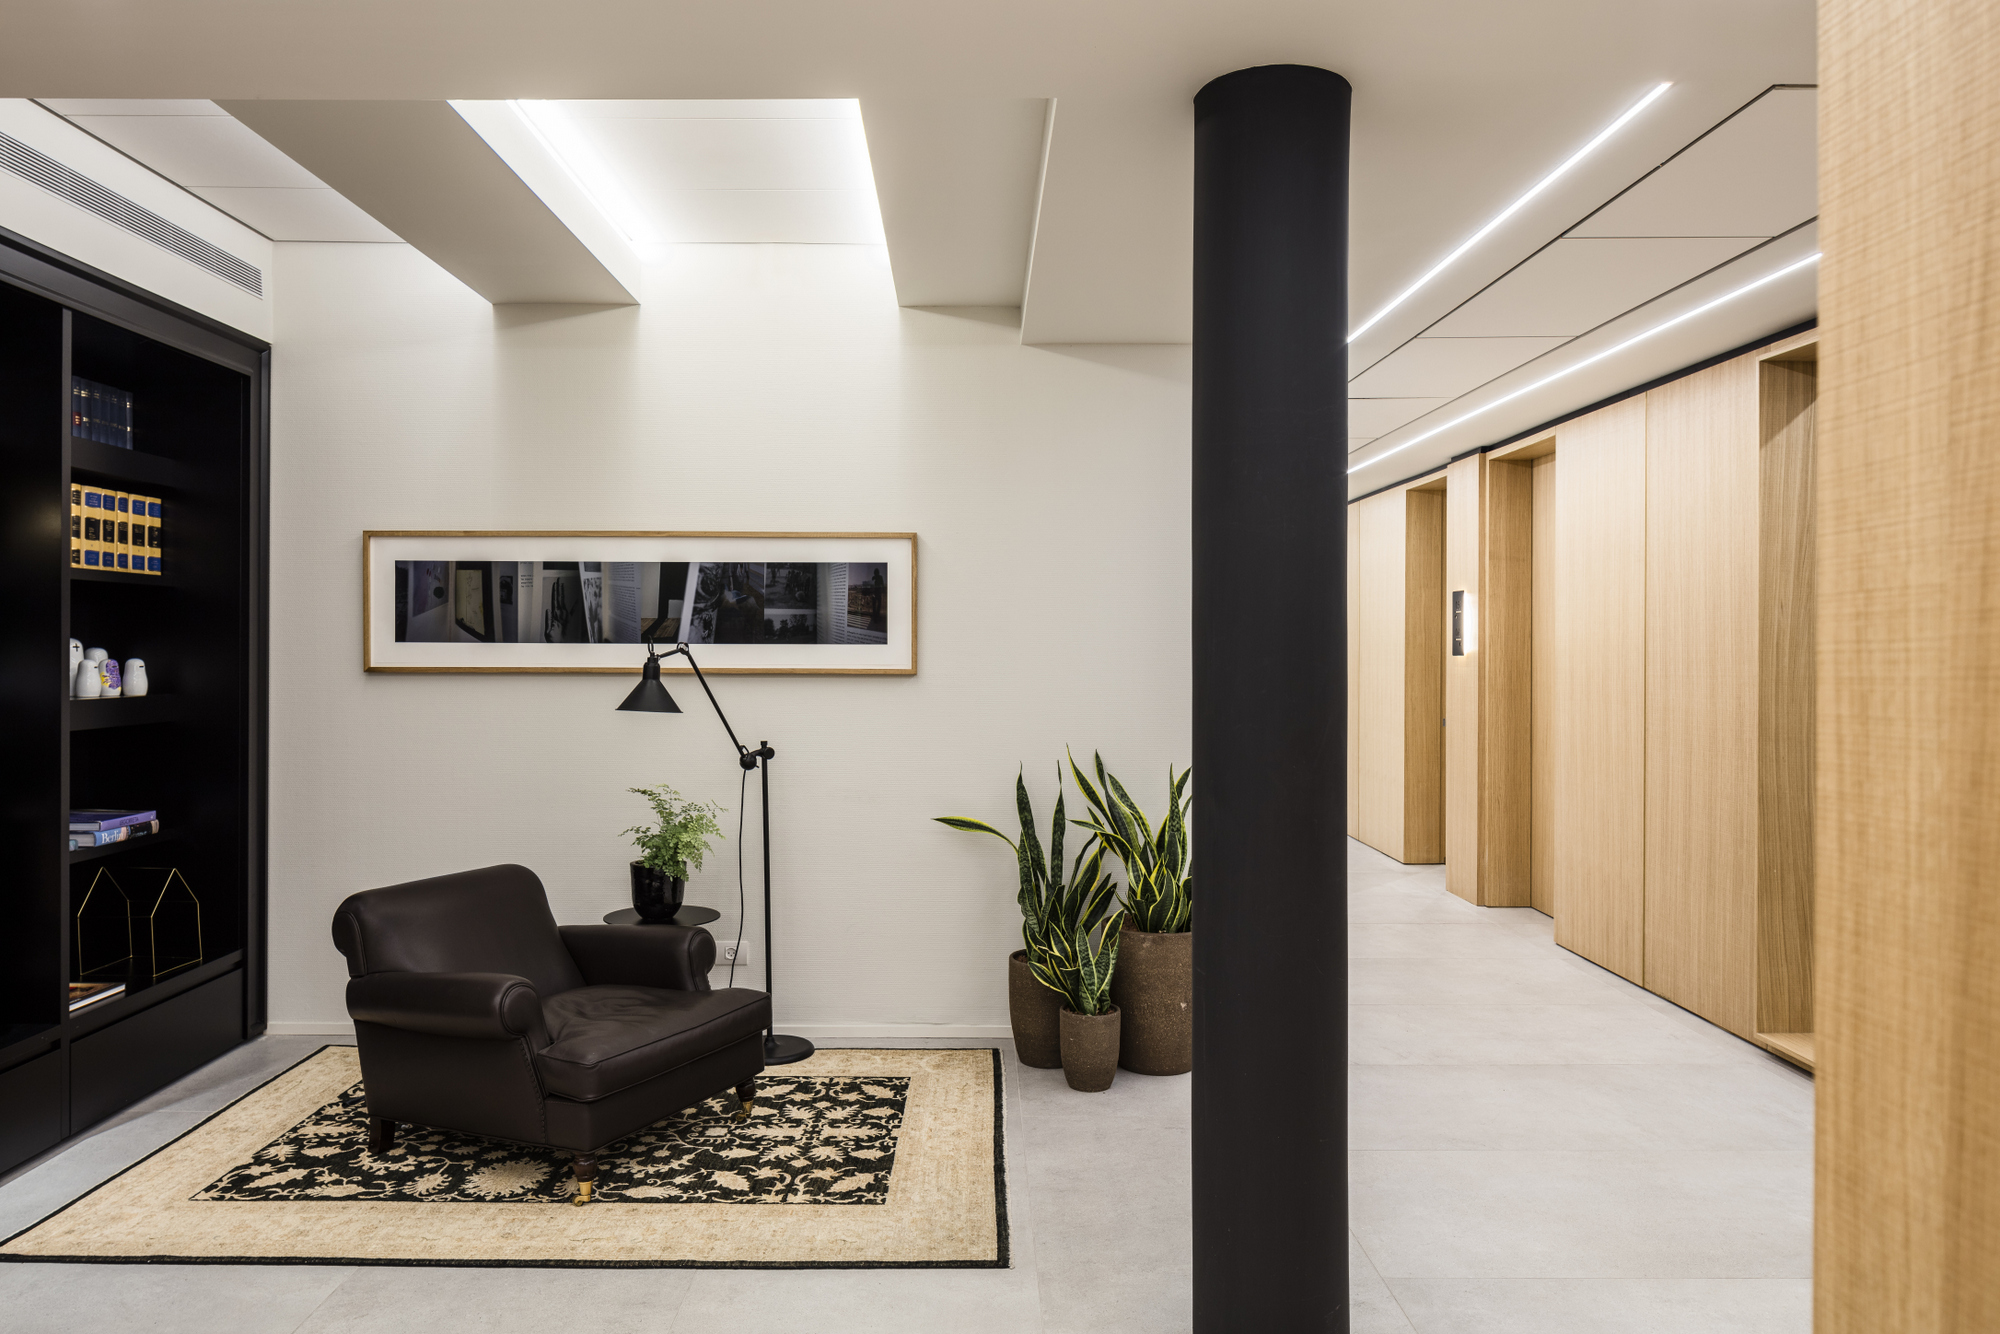 图片[11]|美达律师事务所办公室–Ramat Gan|ART-Arrakis | 建筑室内设计的创新与灵感